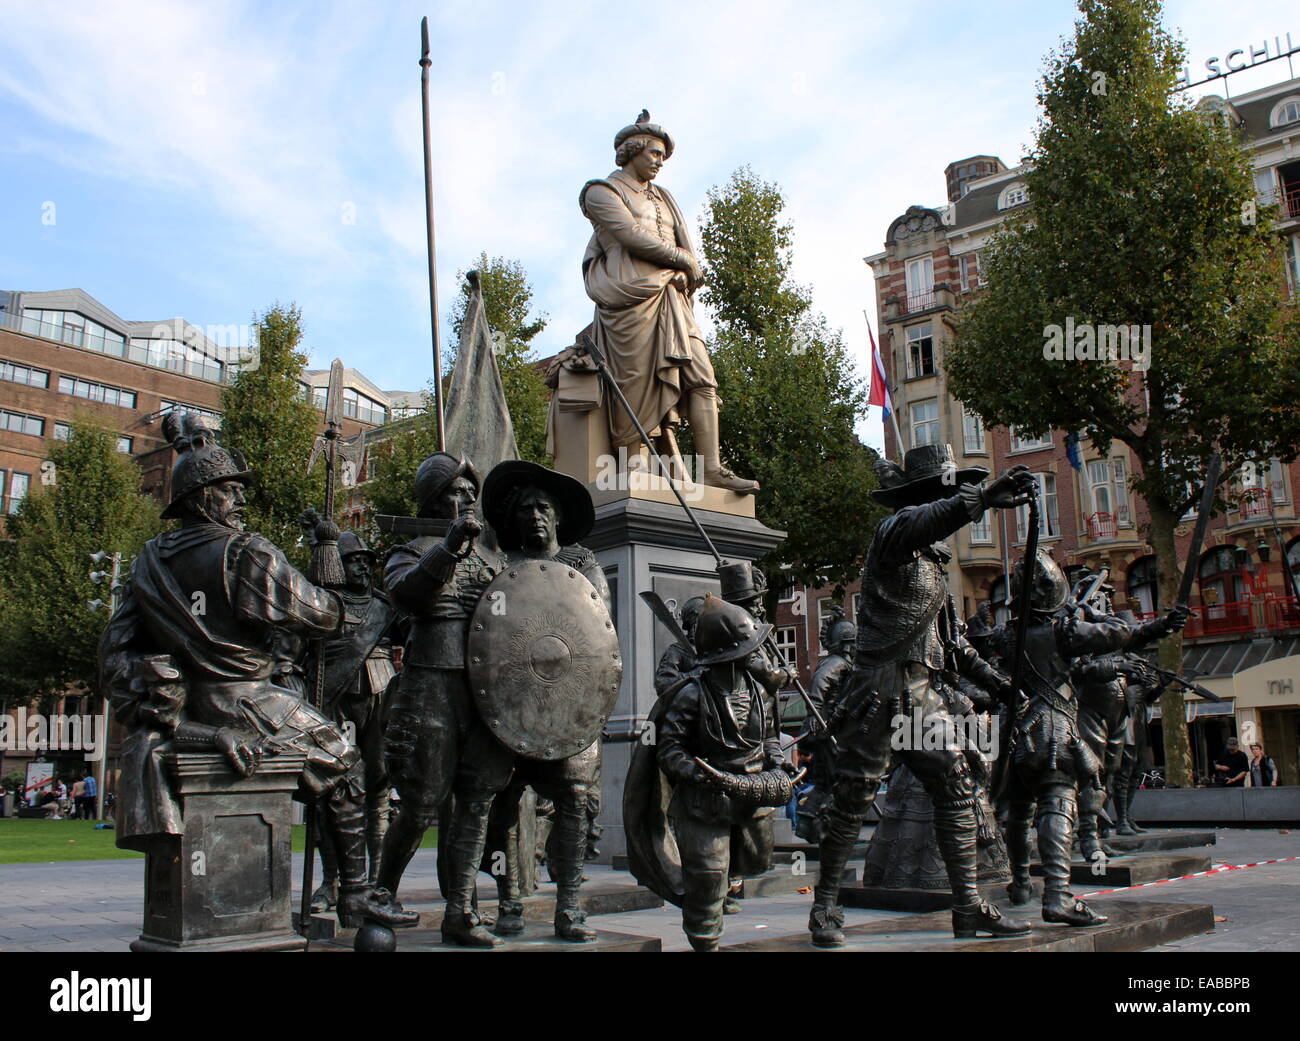 Statua di Rembrandt a Rembrandtplein, interna della città di Amsterdam Paesi Bassi. Di fronte la guardia notturna bronzo rappresentazione 3D Foto Stock